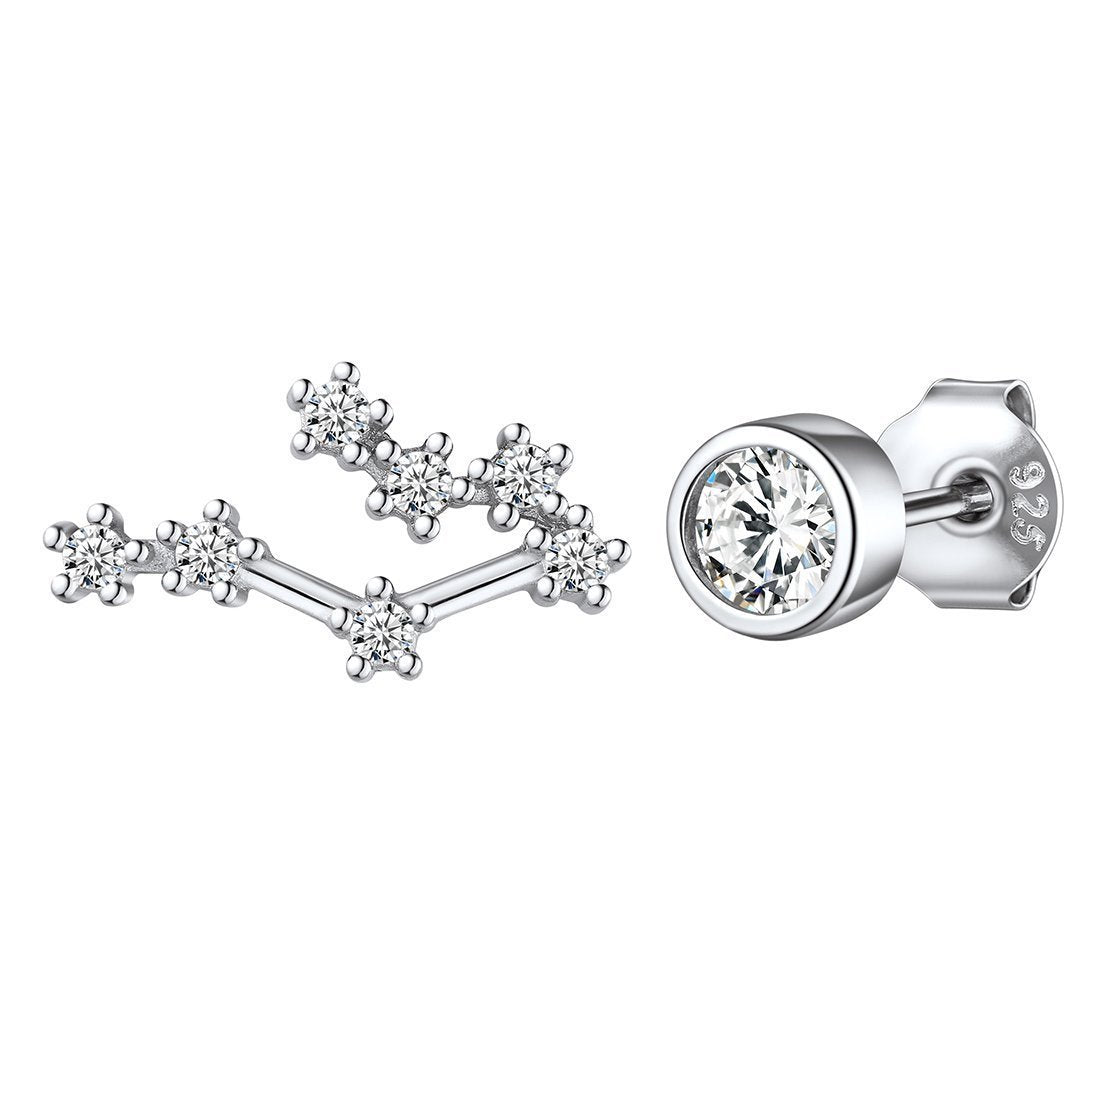 925 Sterling Silver Leo Zodiac Birthstone Asymmetrical Stud Earrings for Women BIRTHSTONES JEWELRY